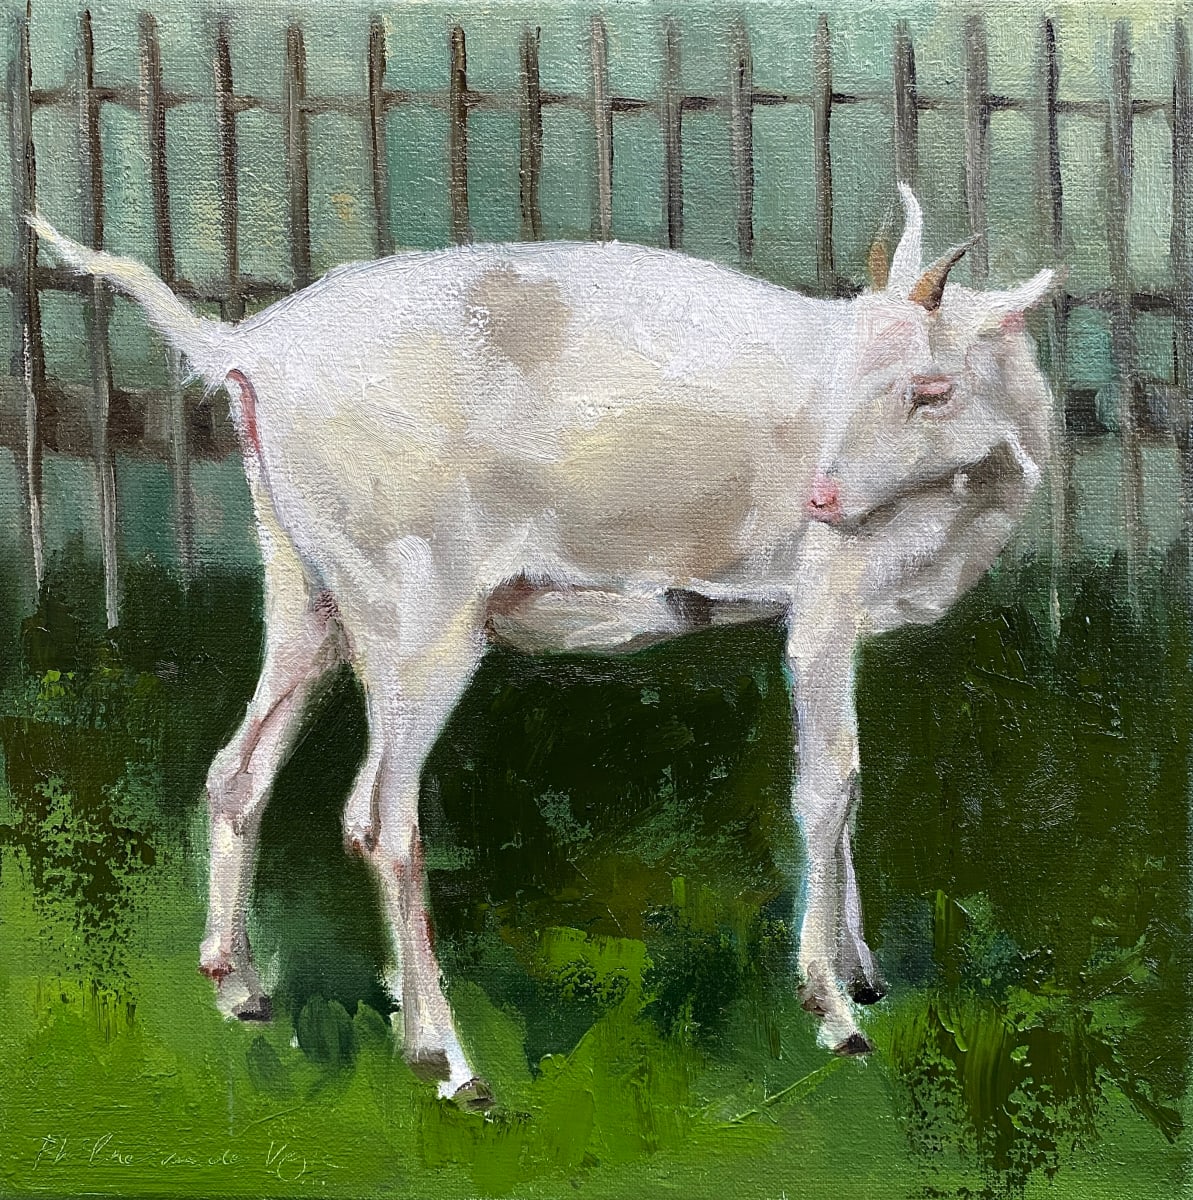 Geitje (White goat) by Philine van der Vegte 